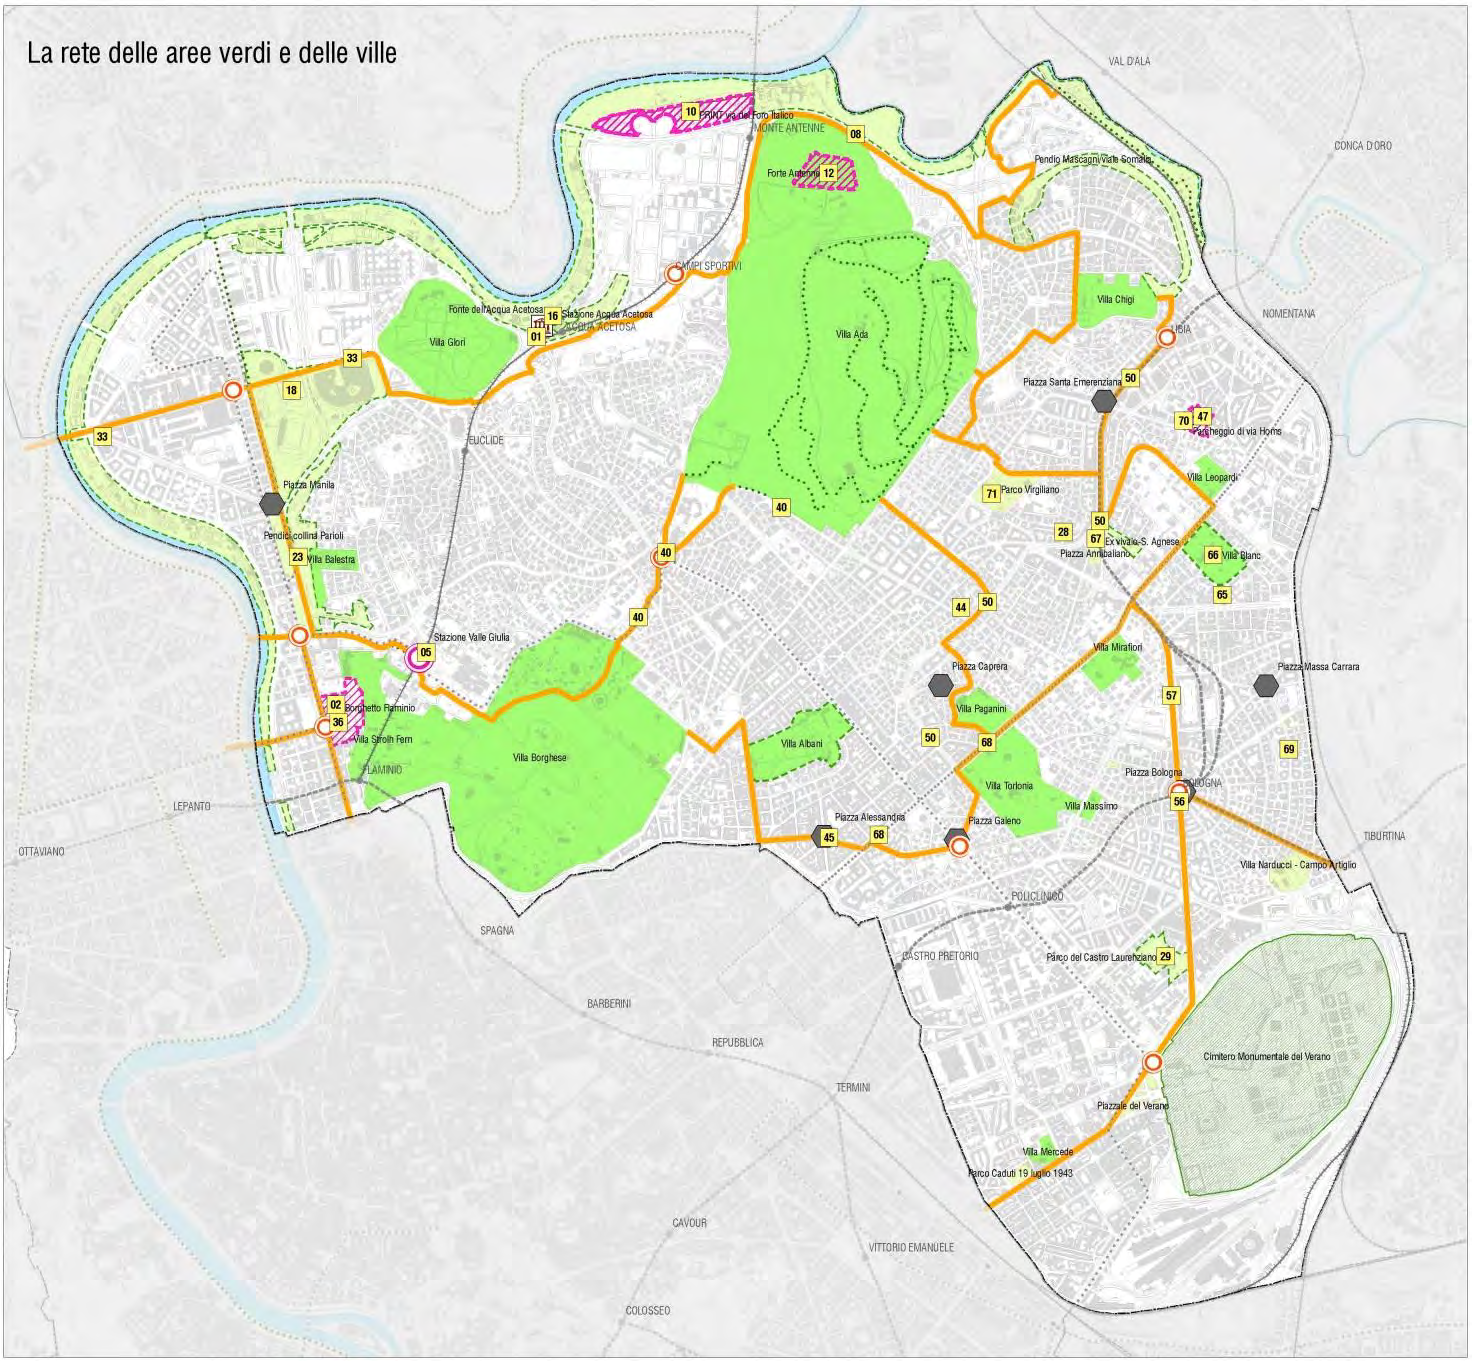 La rete dei parchi e delle ville Il macro-obiettivo La rete dei parchi e delle ville riunisce tutti gli interventi proposti sulle aree verdi e punta, attraverso la realizzazione di numerosi assi di